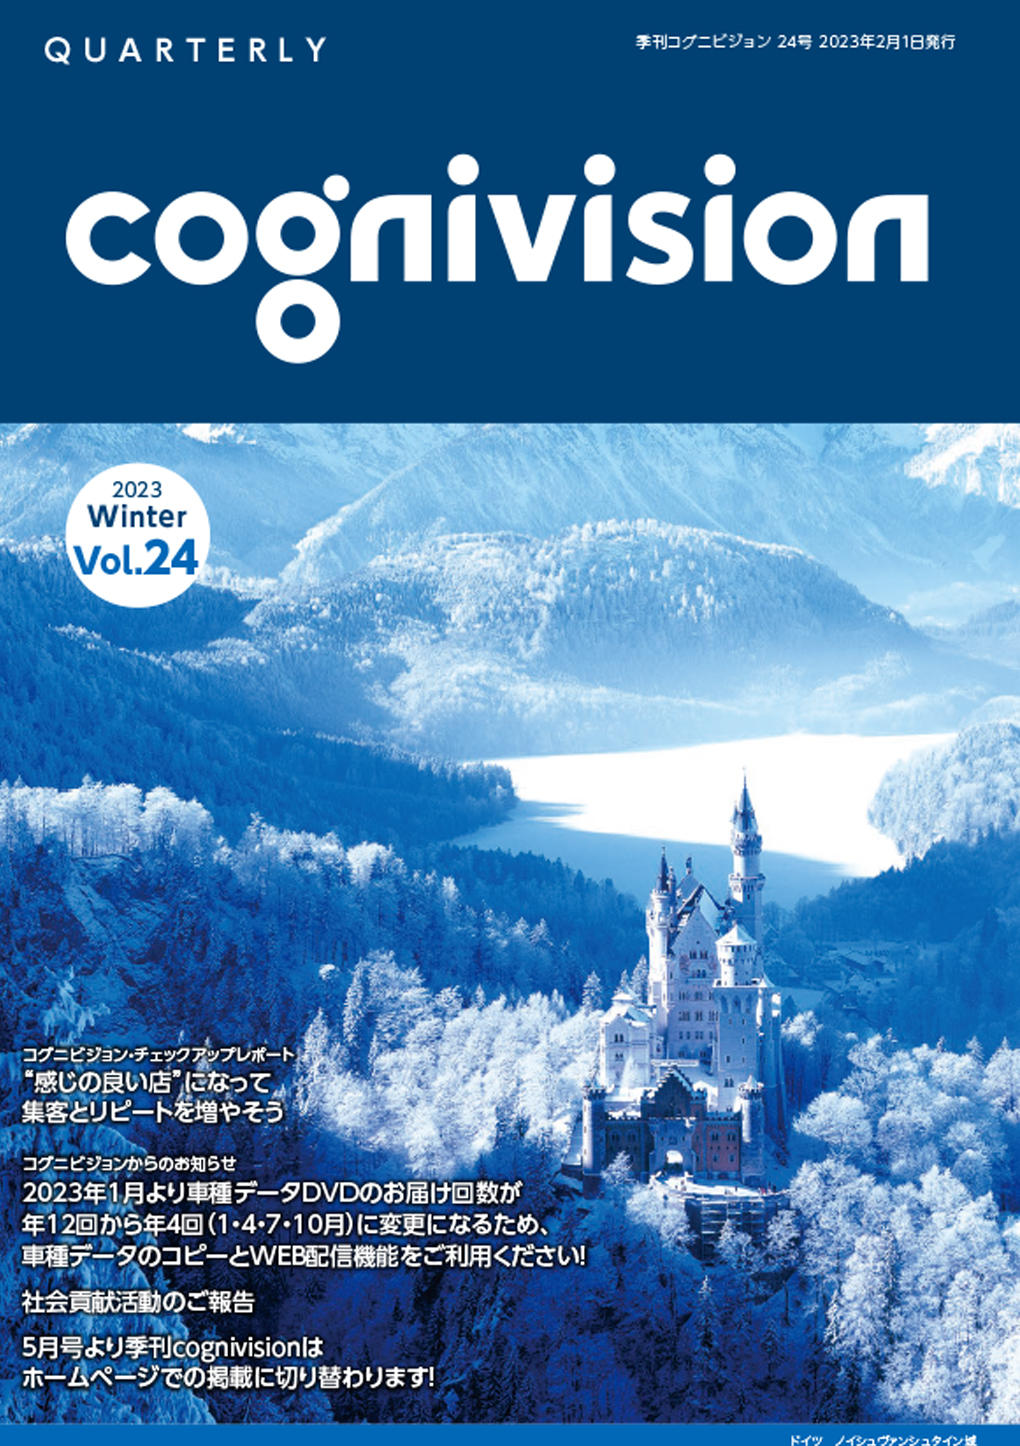 Quarterly_cognivision_vol24.jpg